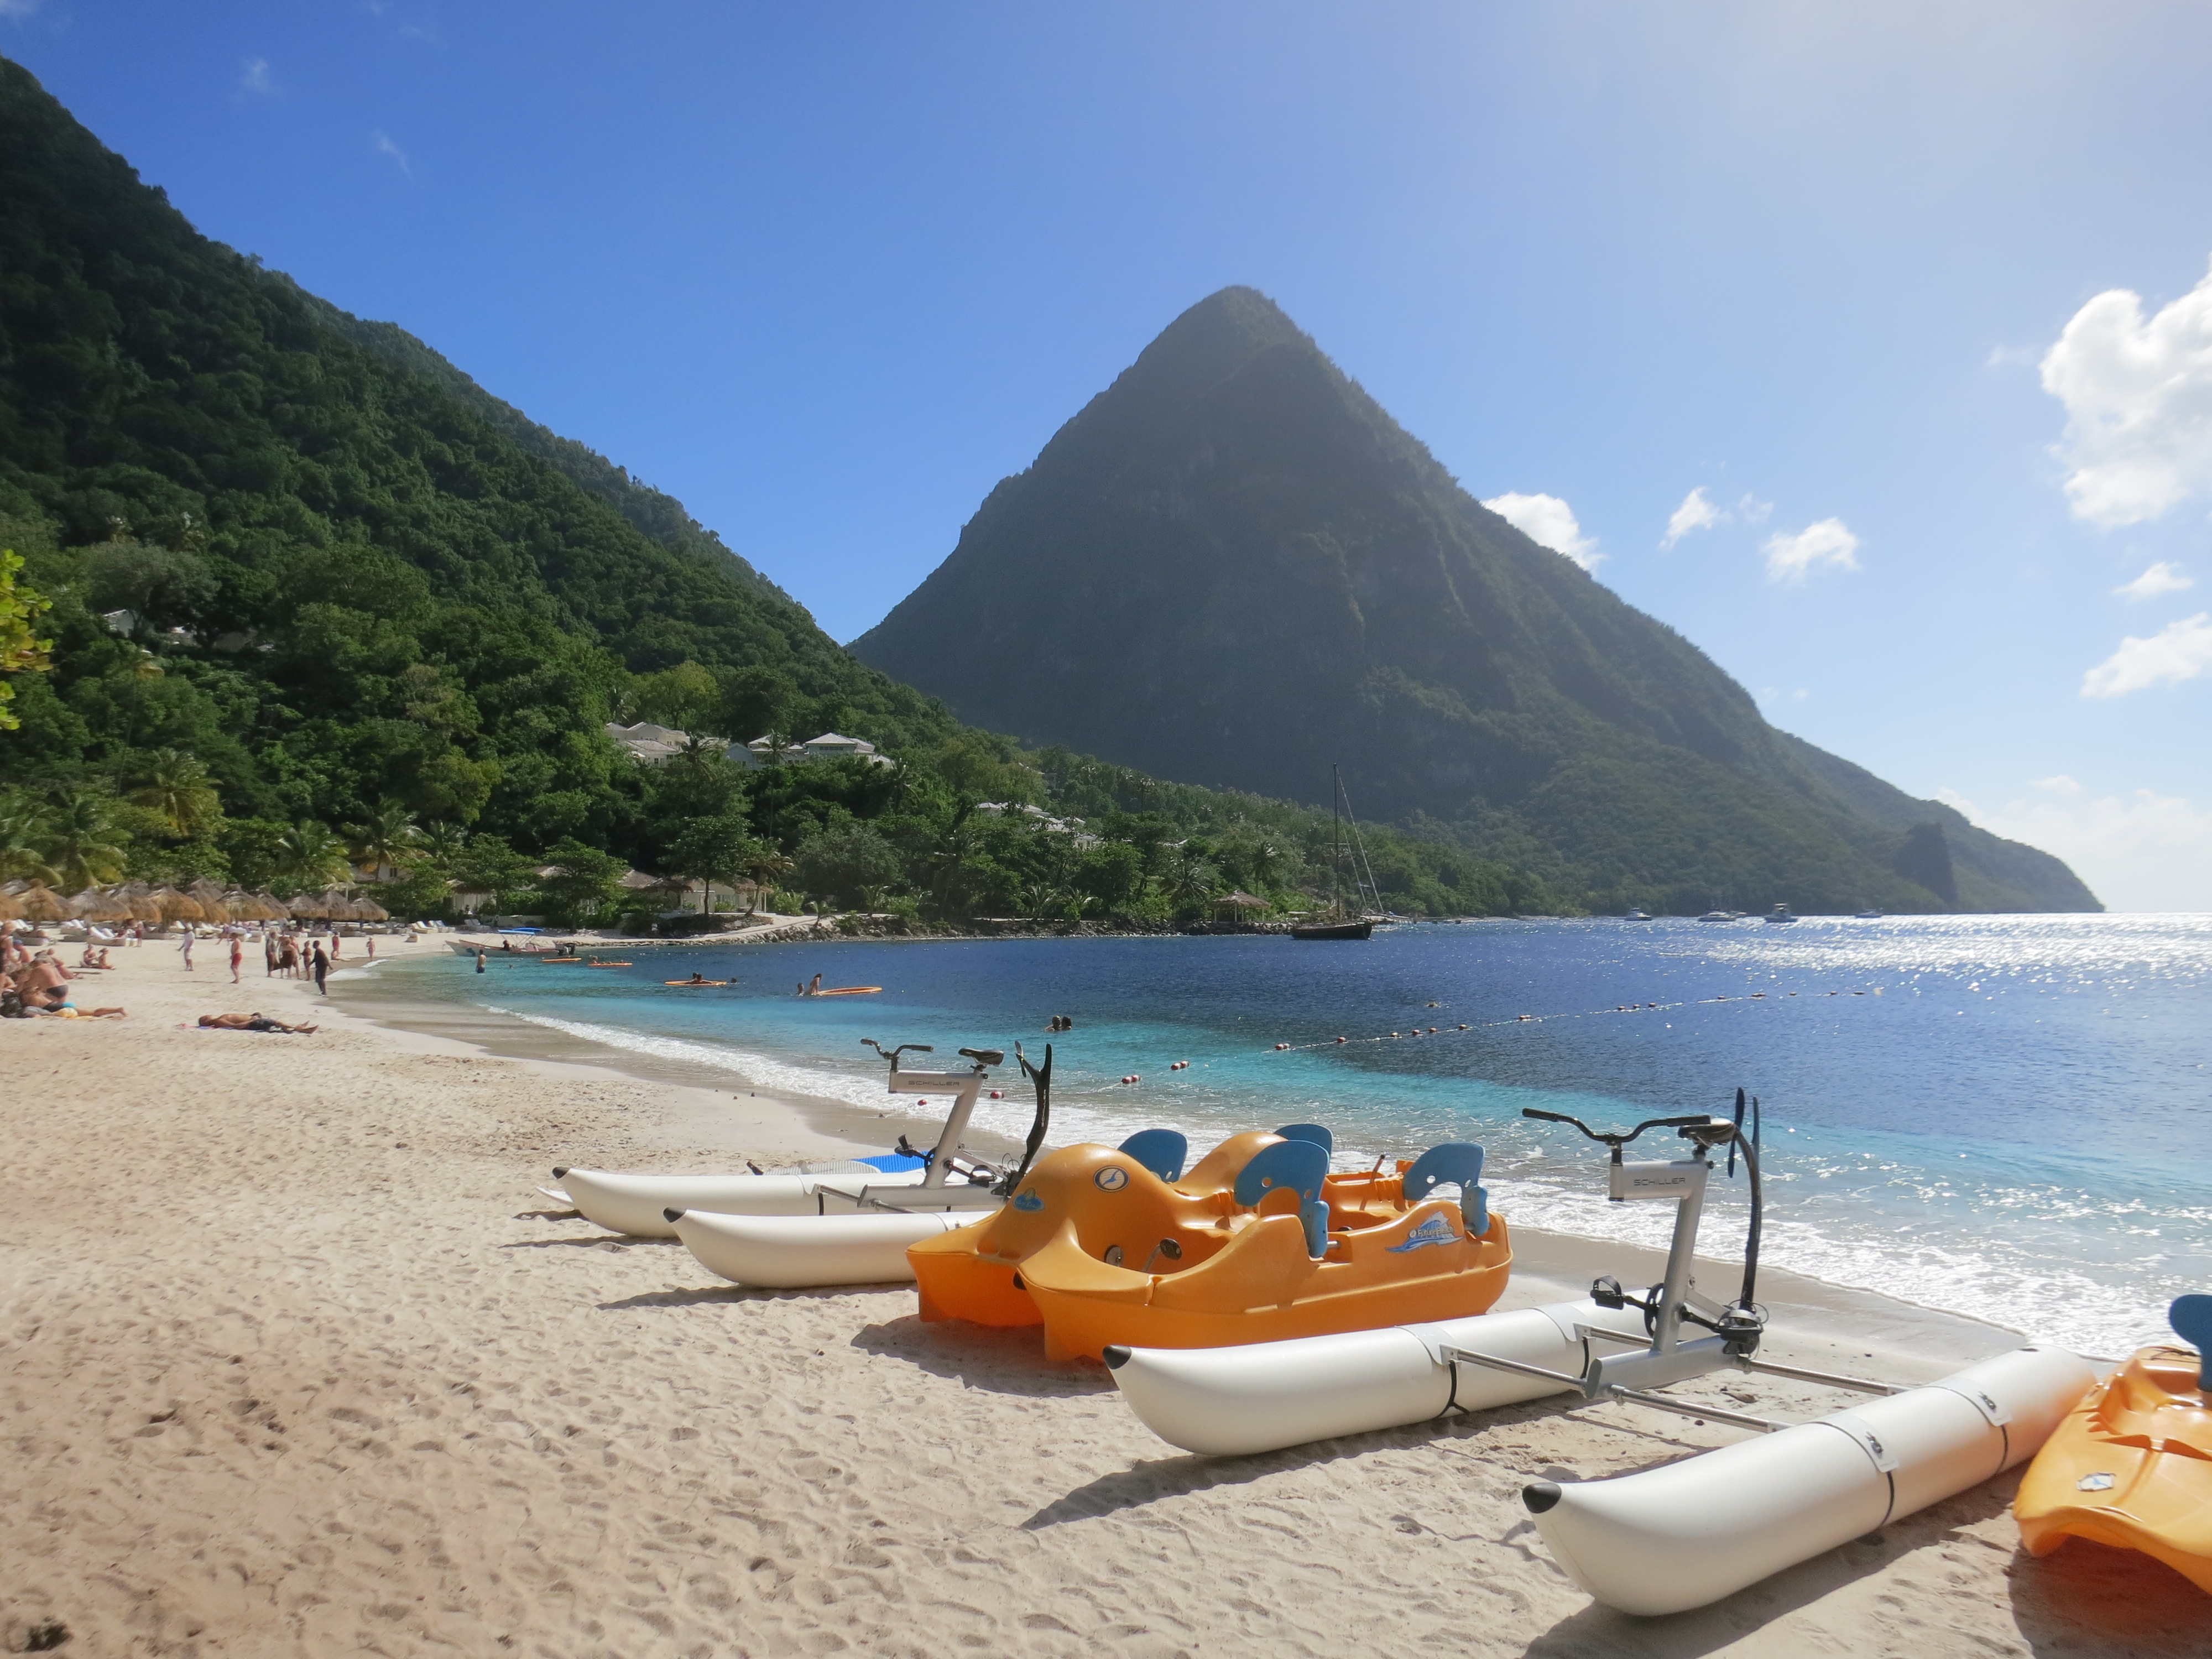 St. Lucia honeymoon ideas - Sugar Beach